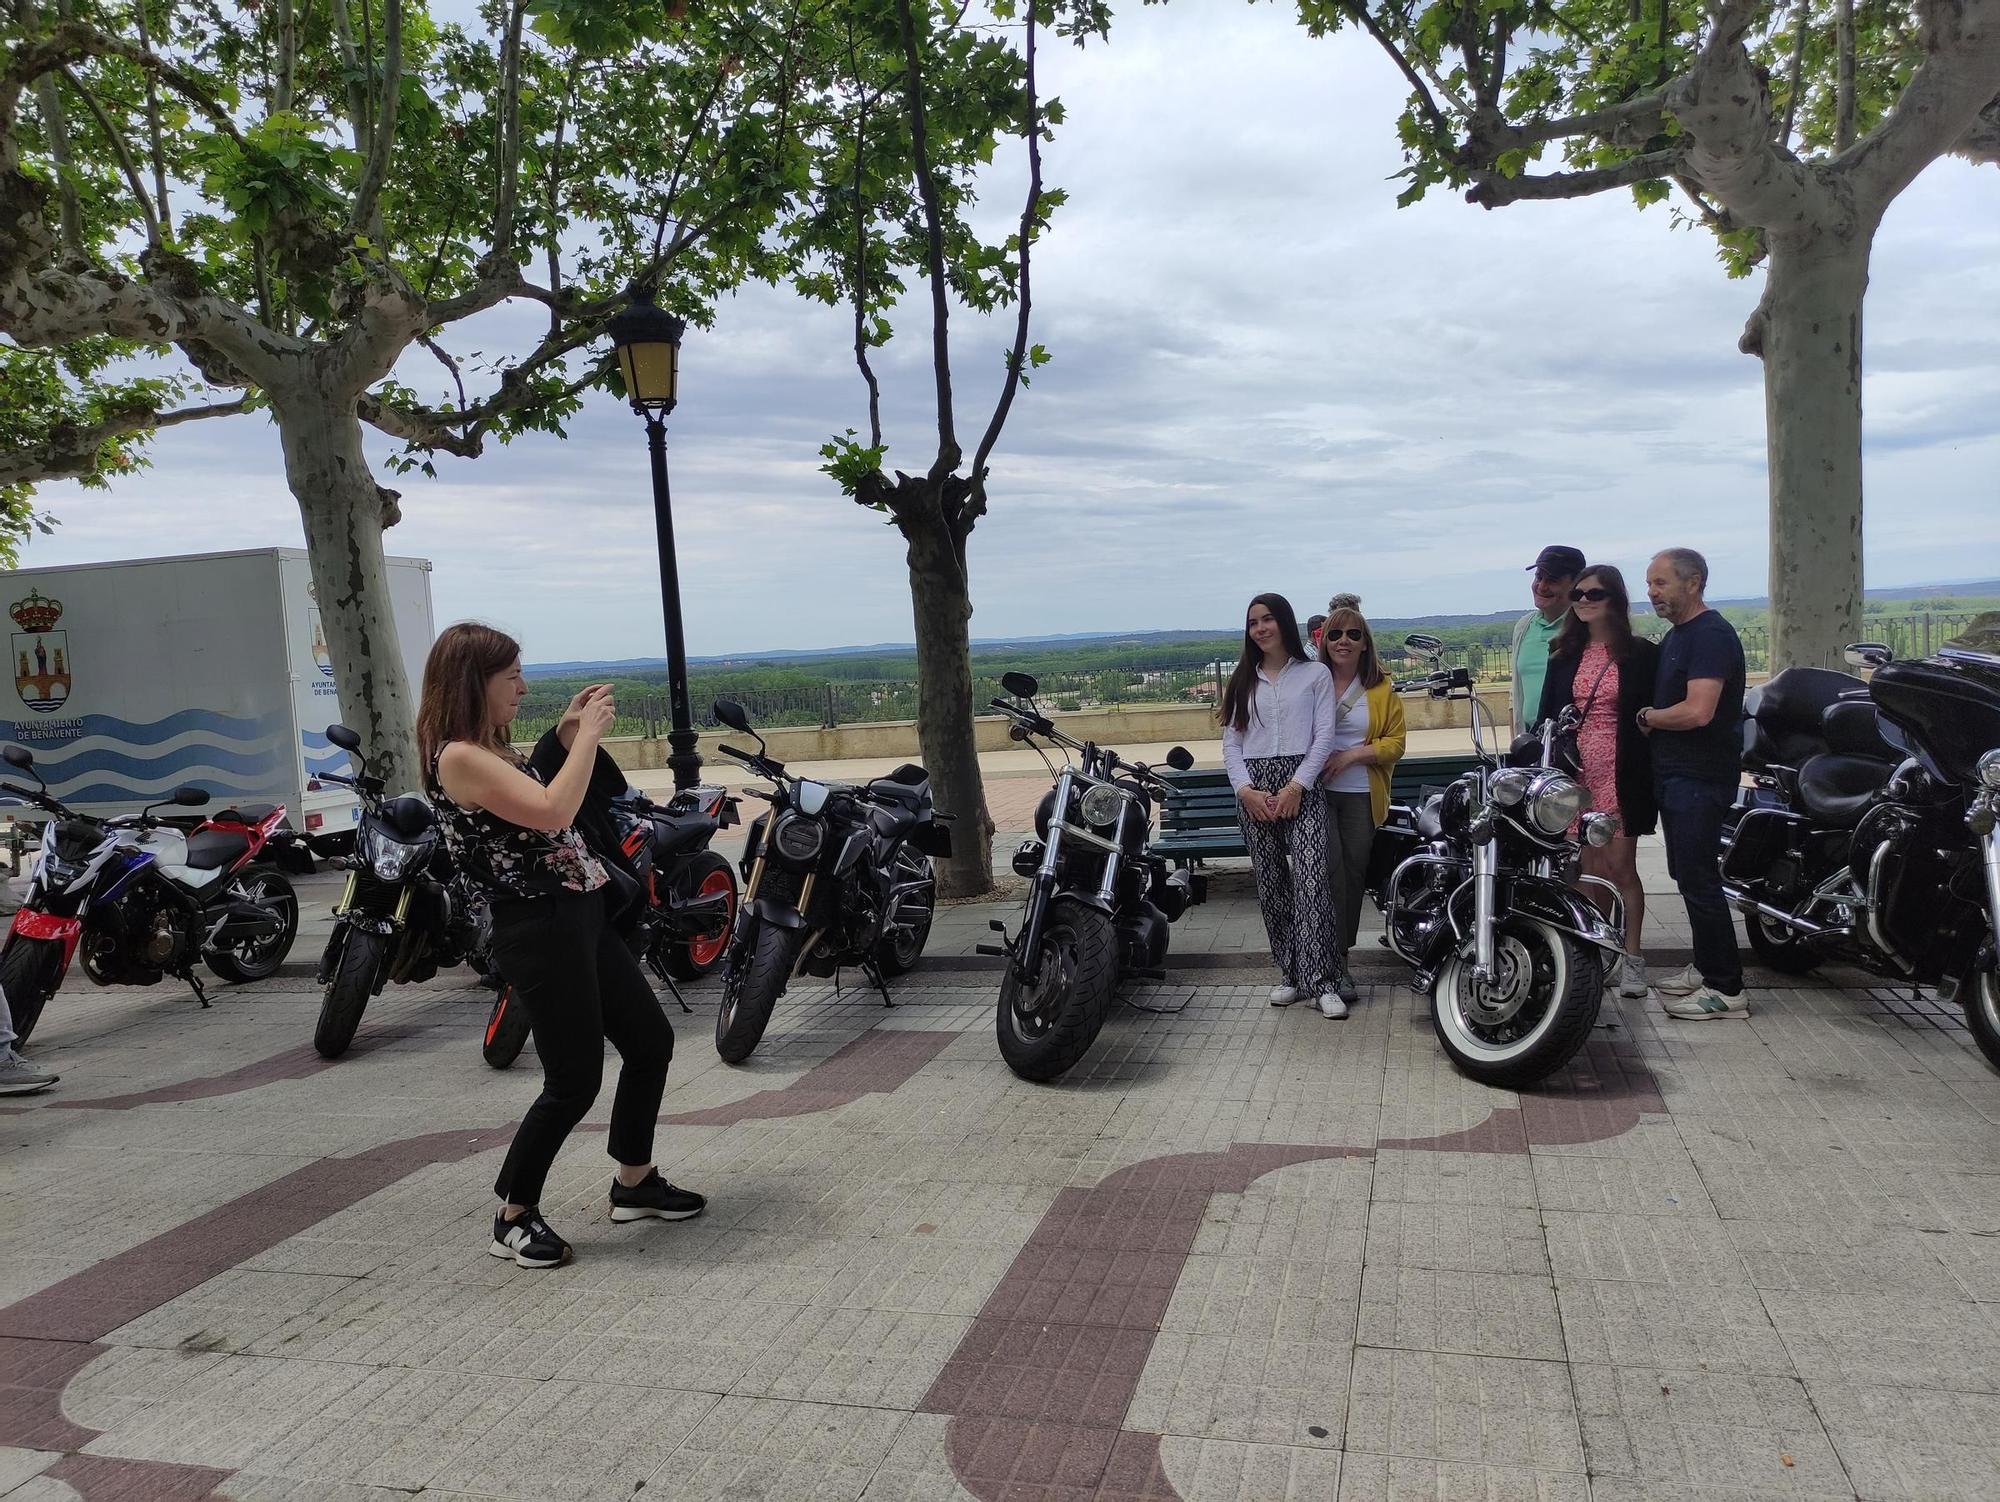 GALERÍA | Benavente Motofest, en imágenes